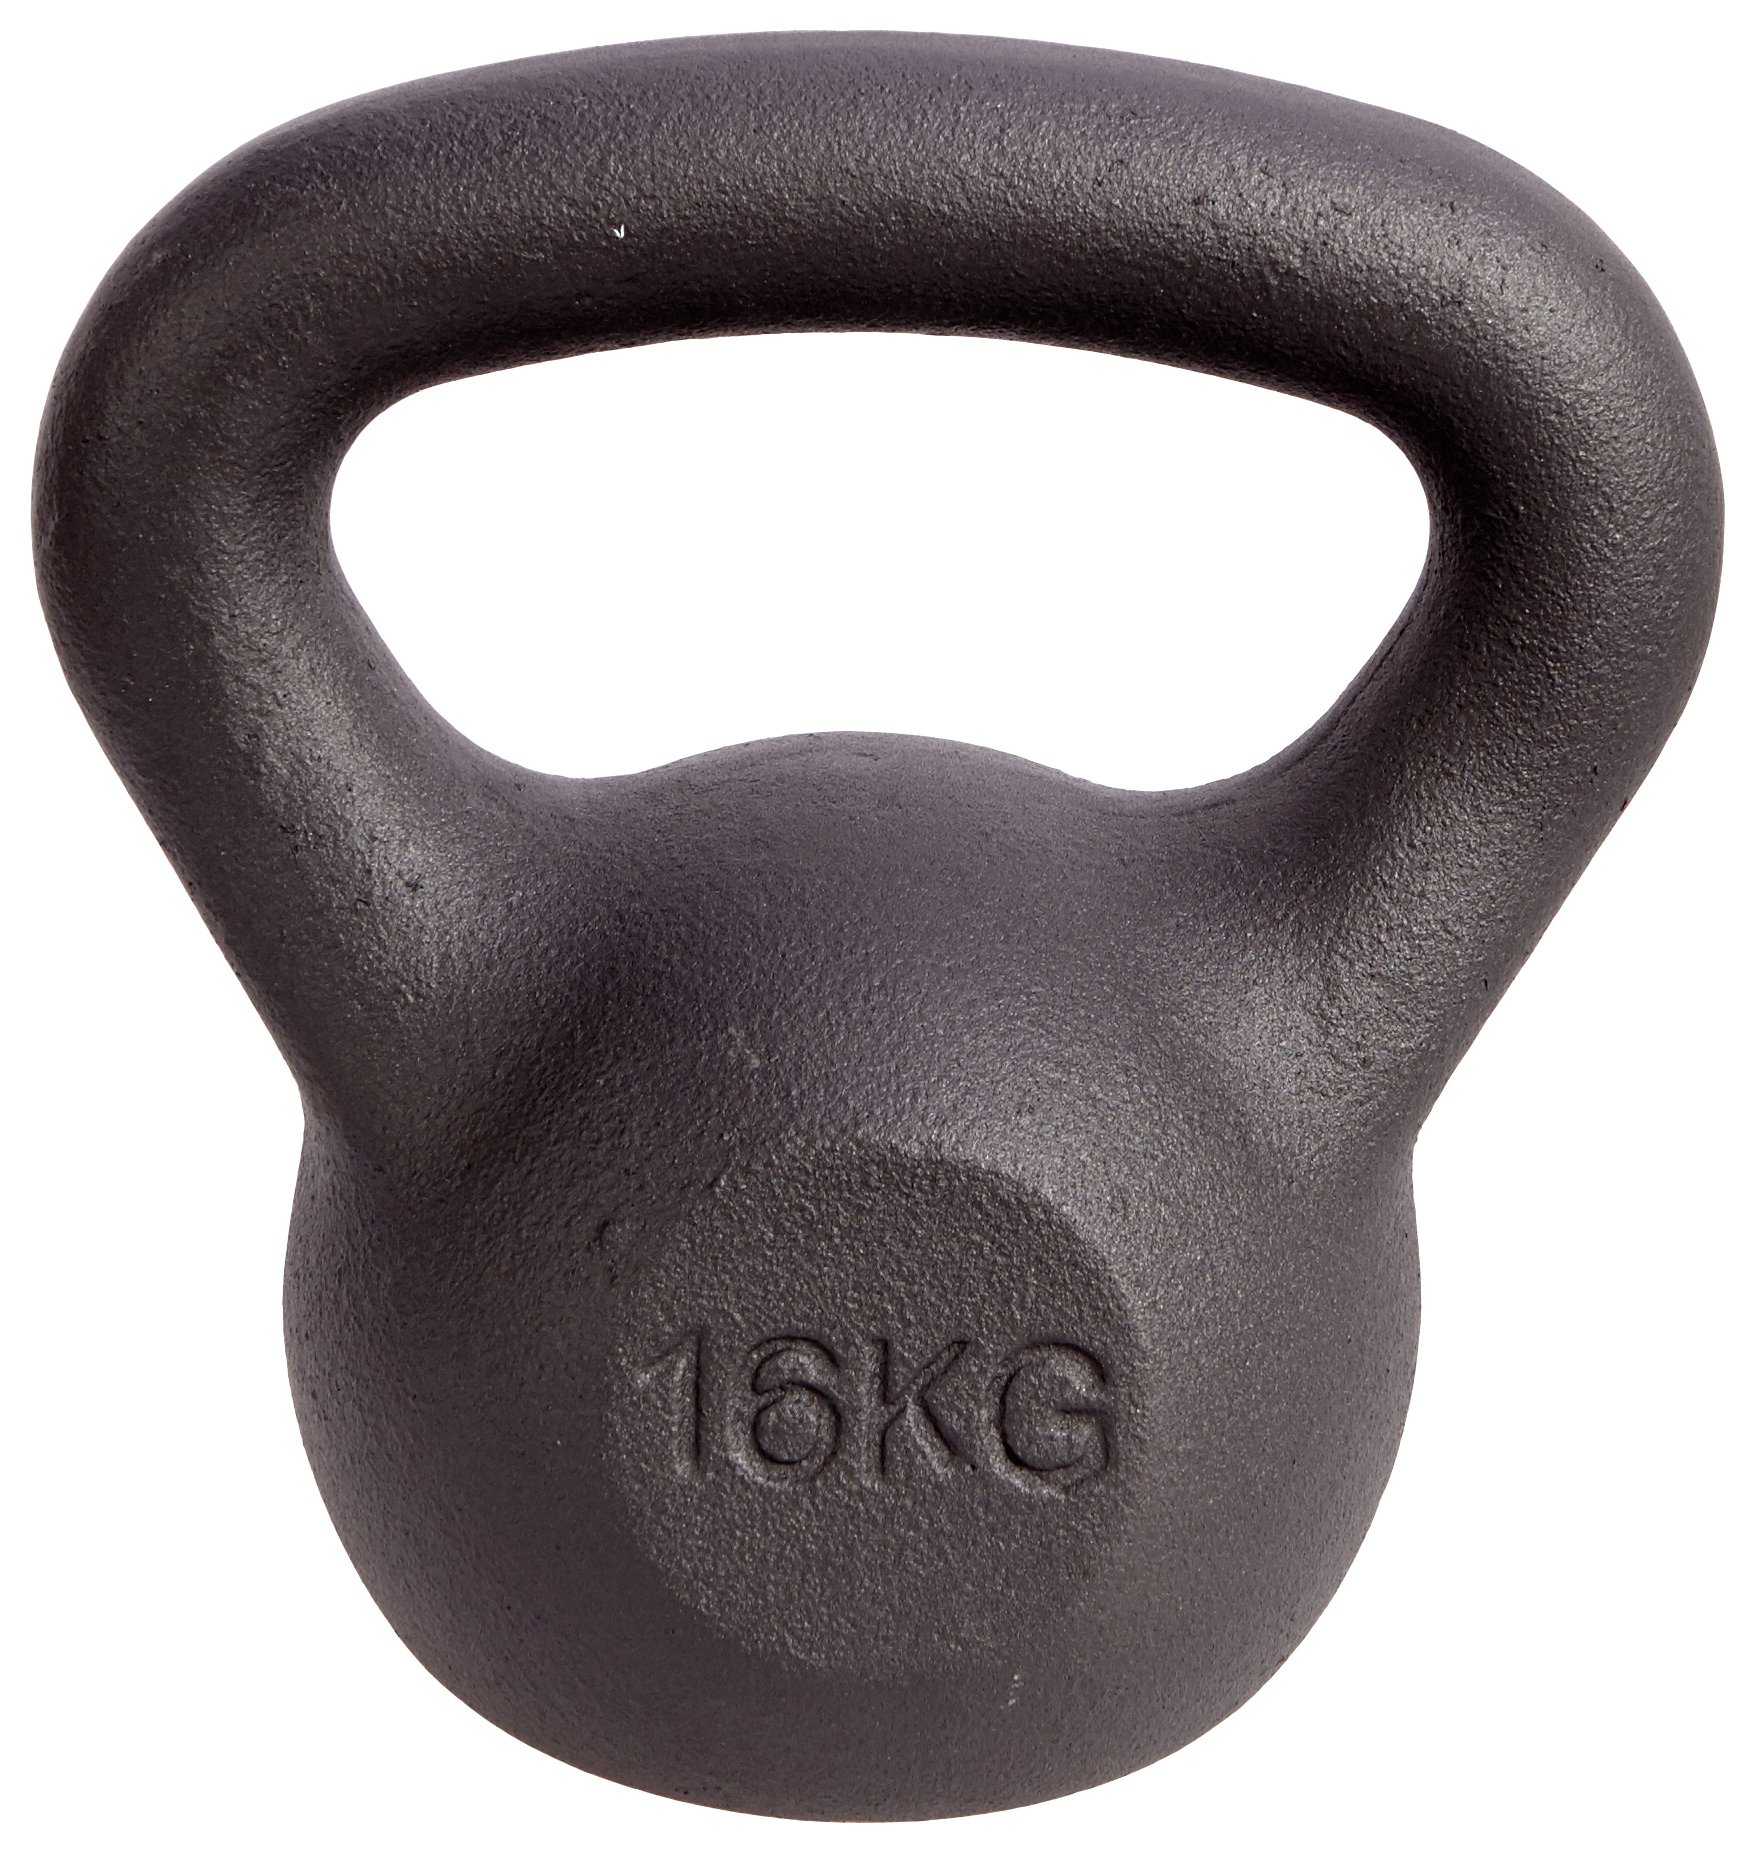 Men's Health Cast Iron Kettlebell - 16kg